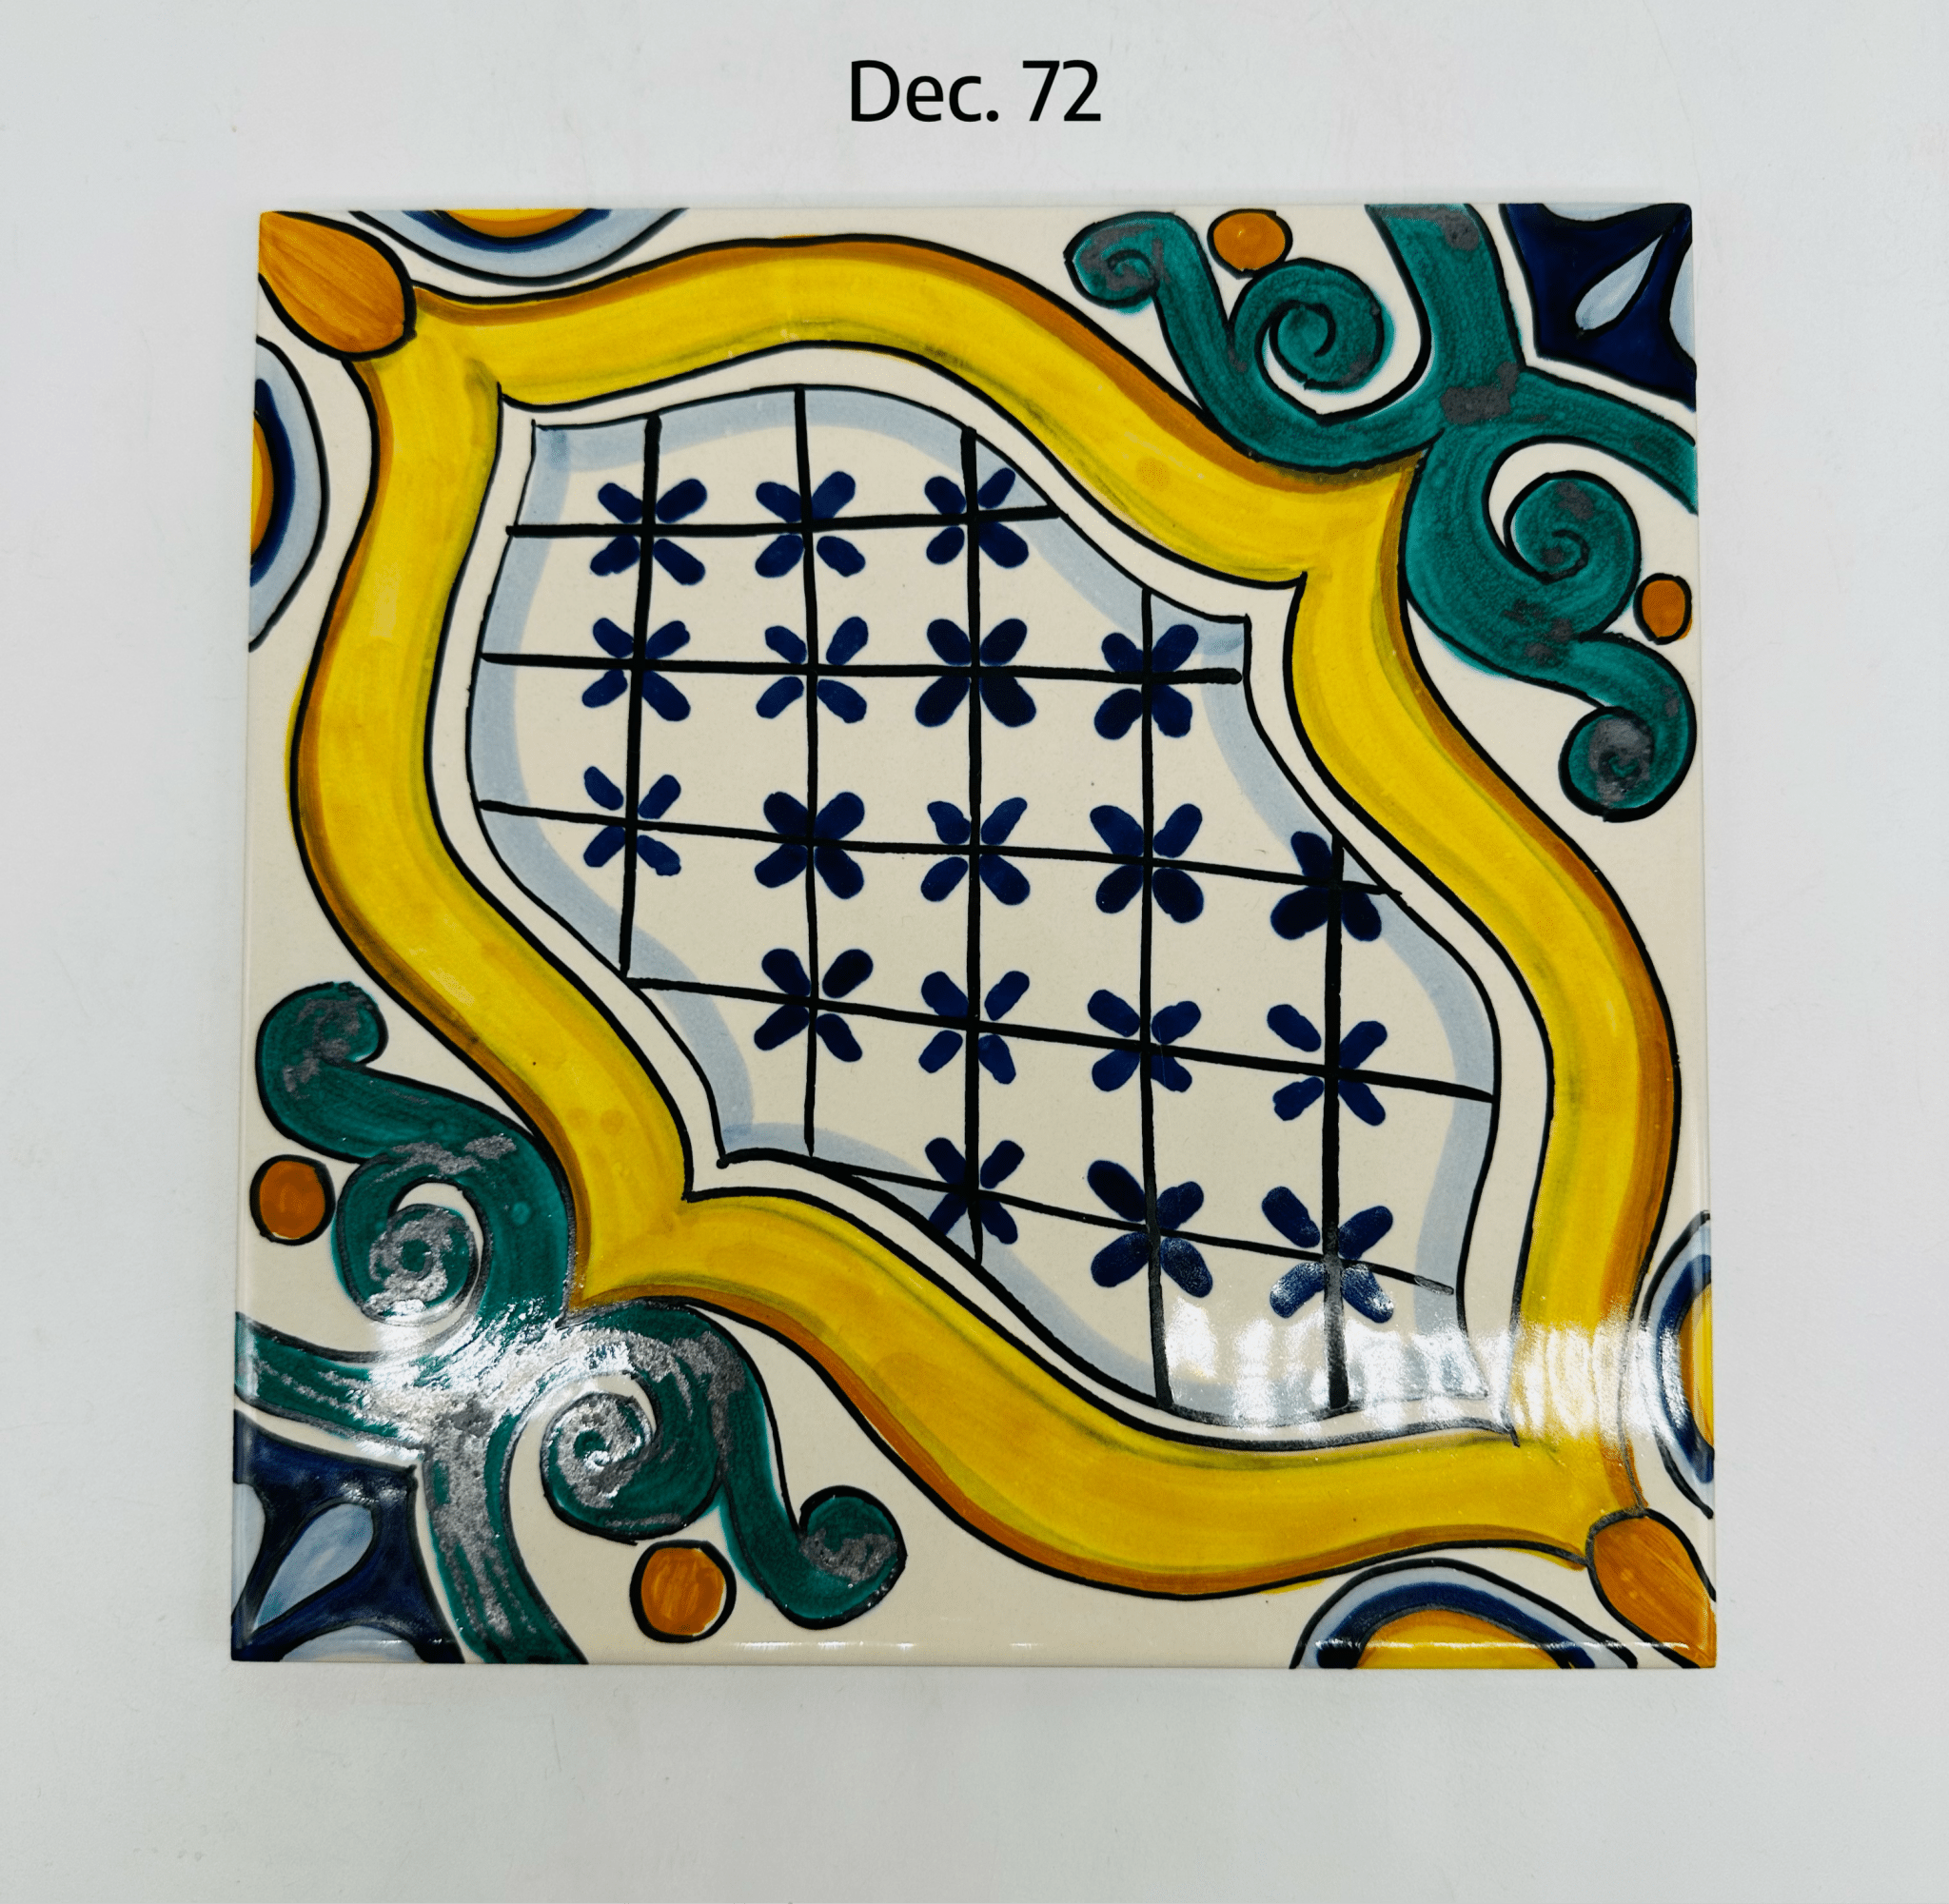 Maioliche Ceramica Caltagirone cm 20x20 Piastrelle Mattonelle decorate a mano - DD CERAMICHE SICILIANE